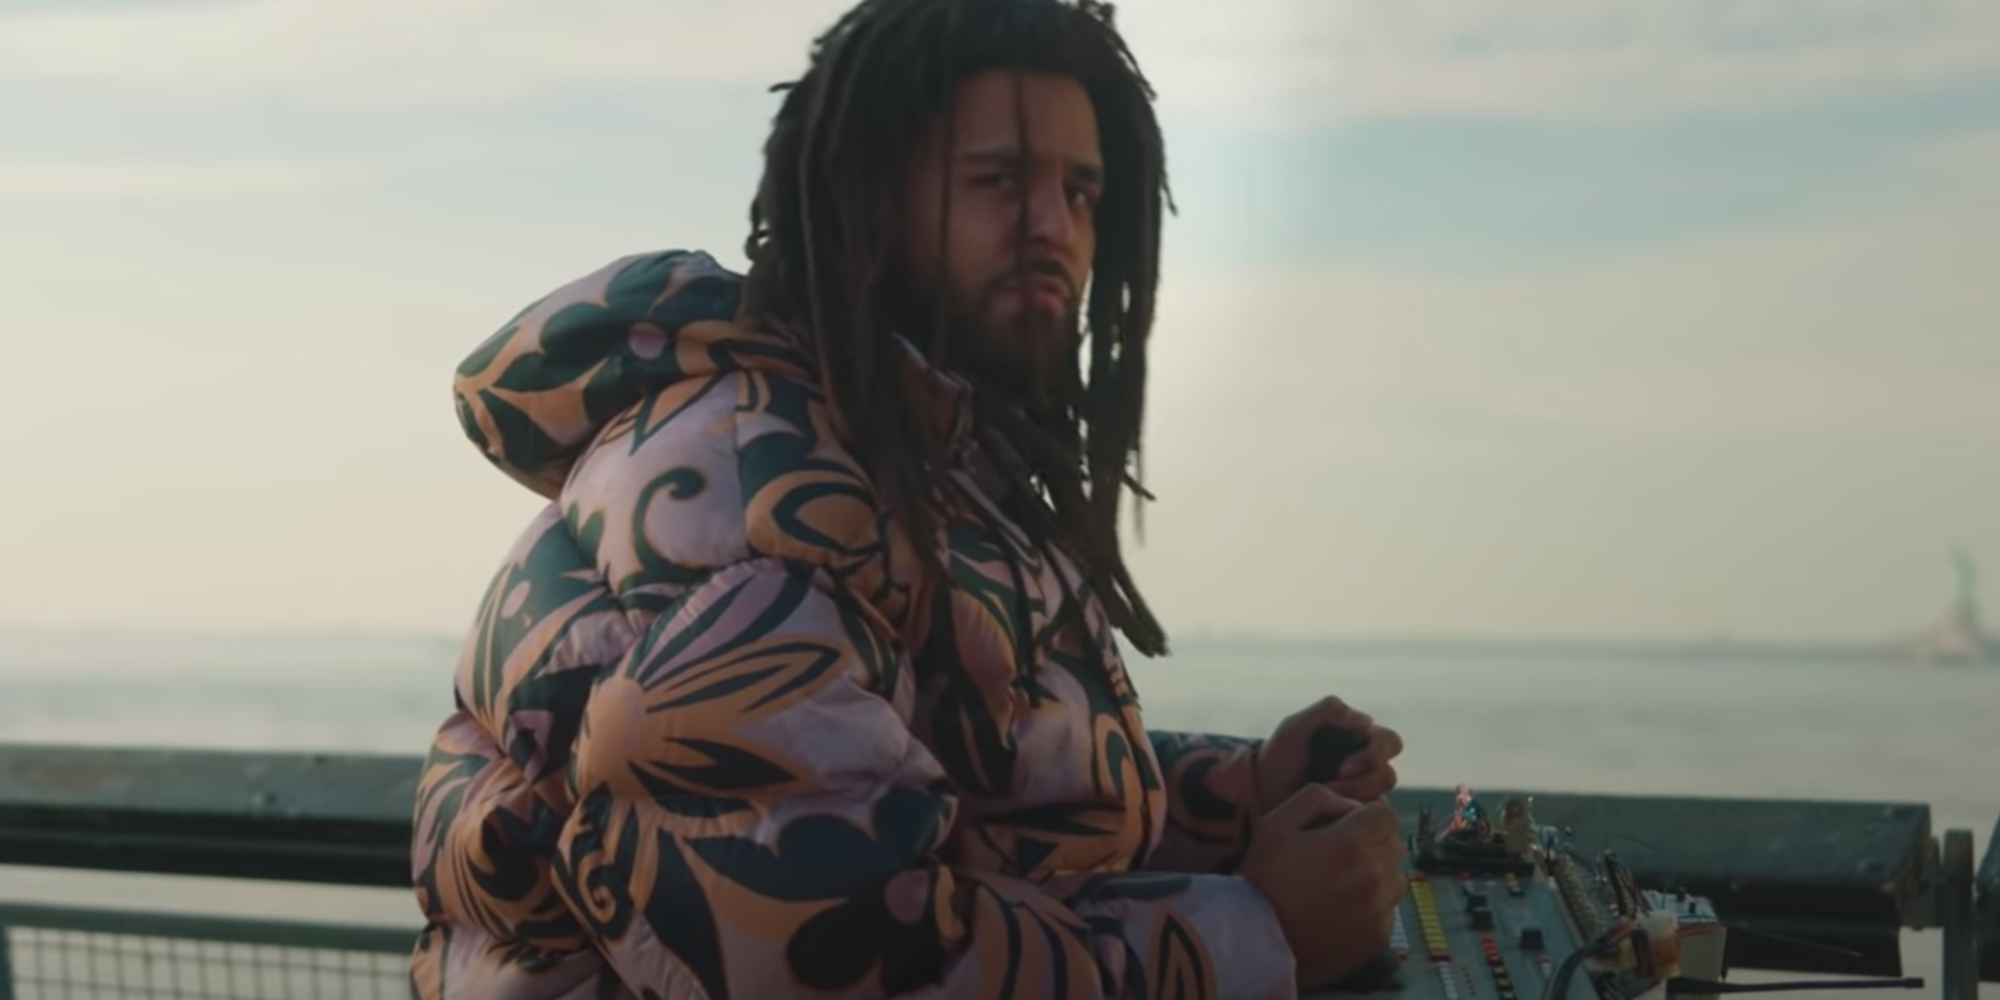 Watch J.Cole's new video for 'a m a r i' just released